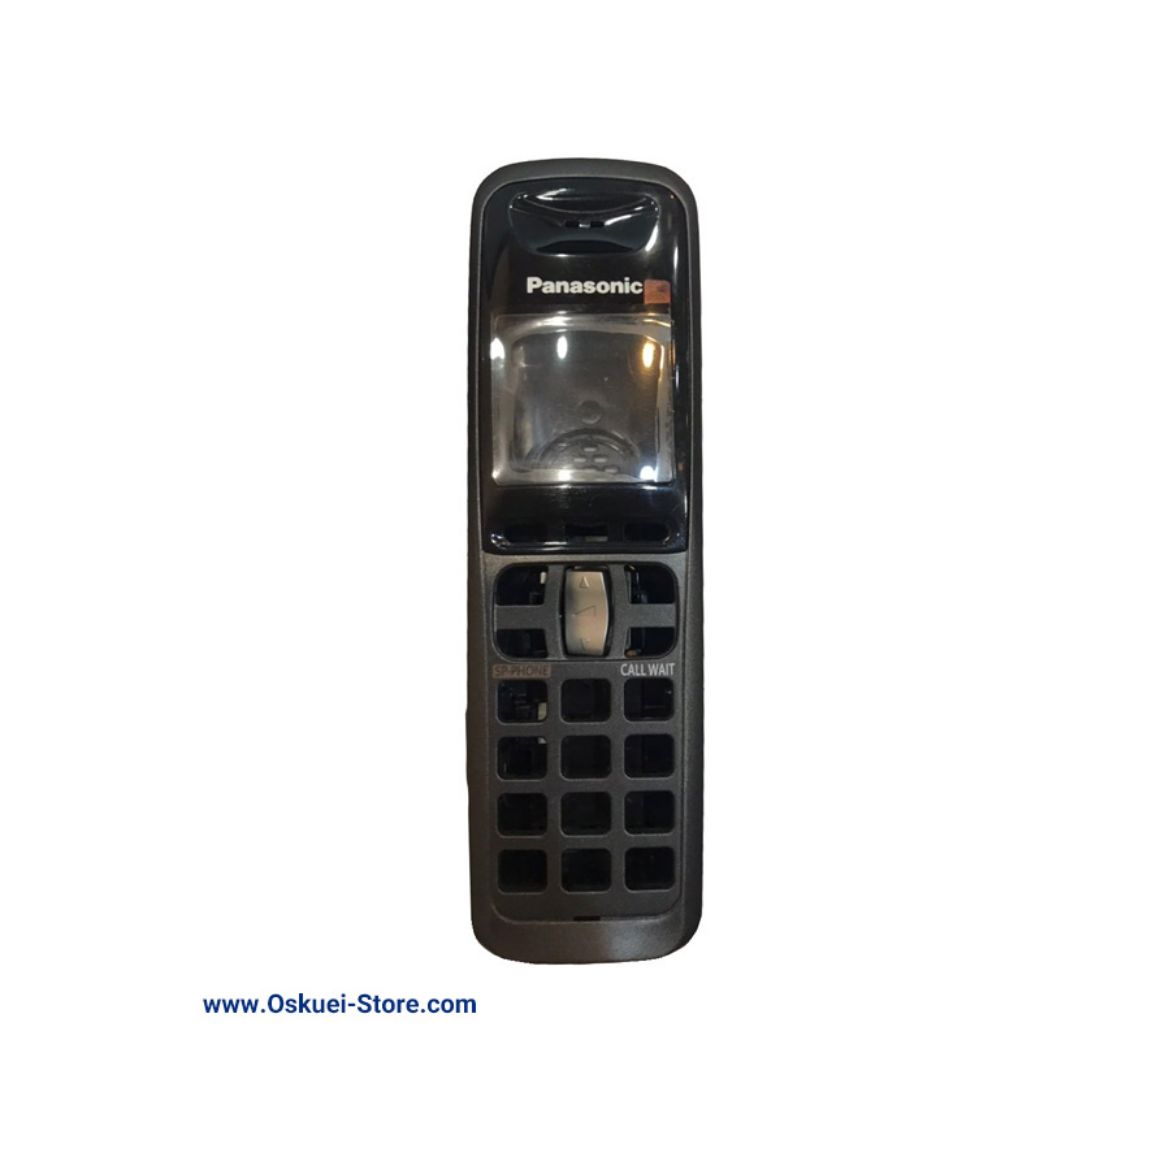 Panasonic cover KX-TGA640 Cordless Telephone